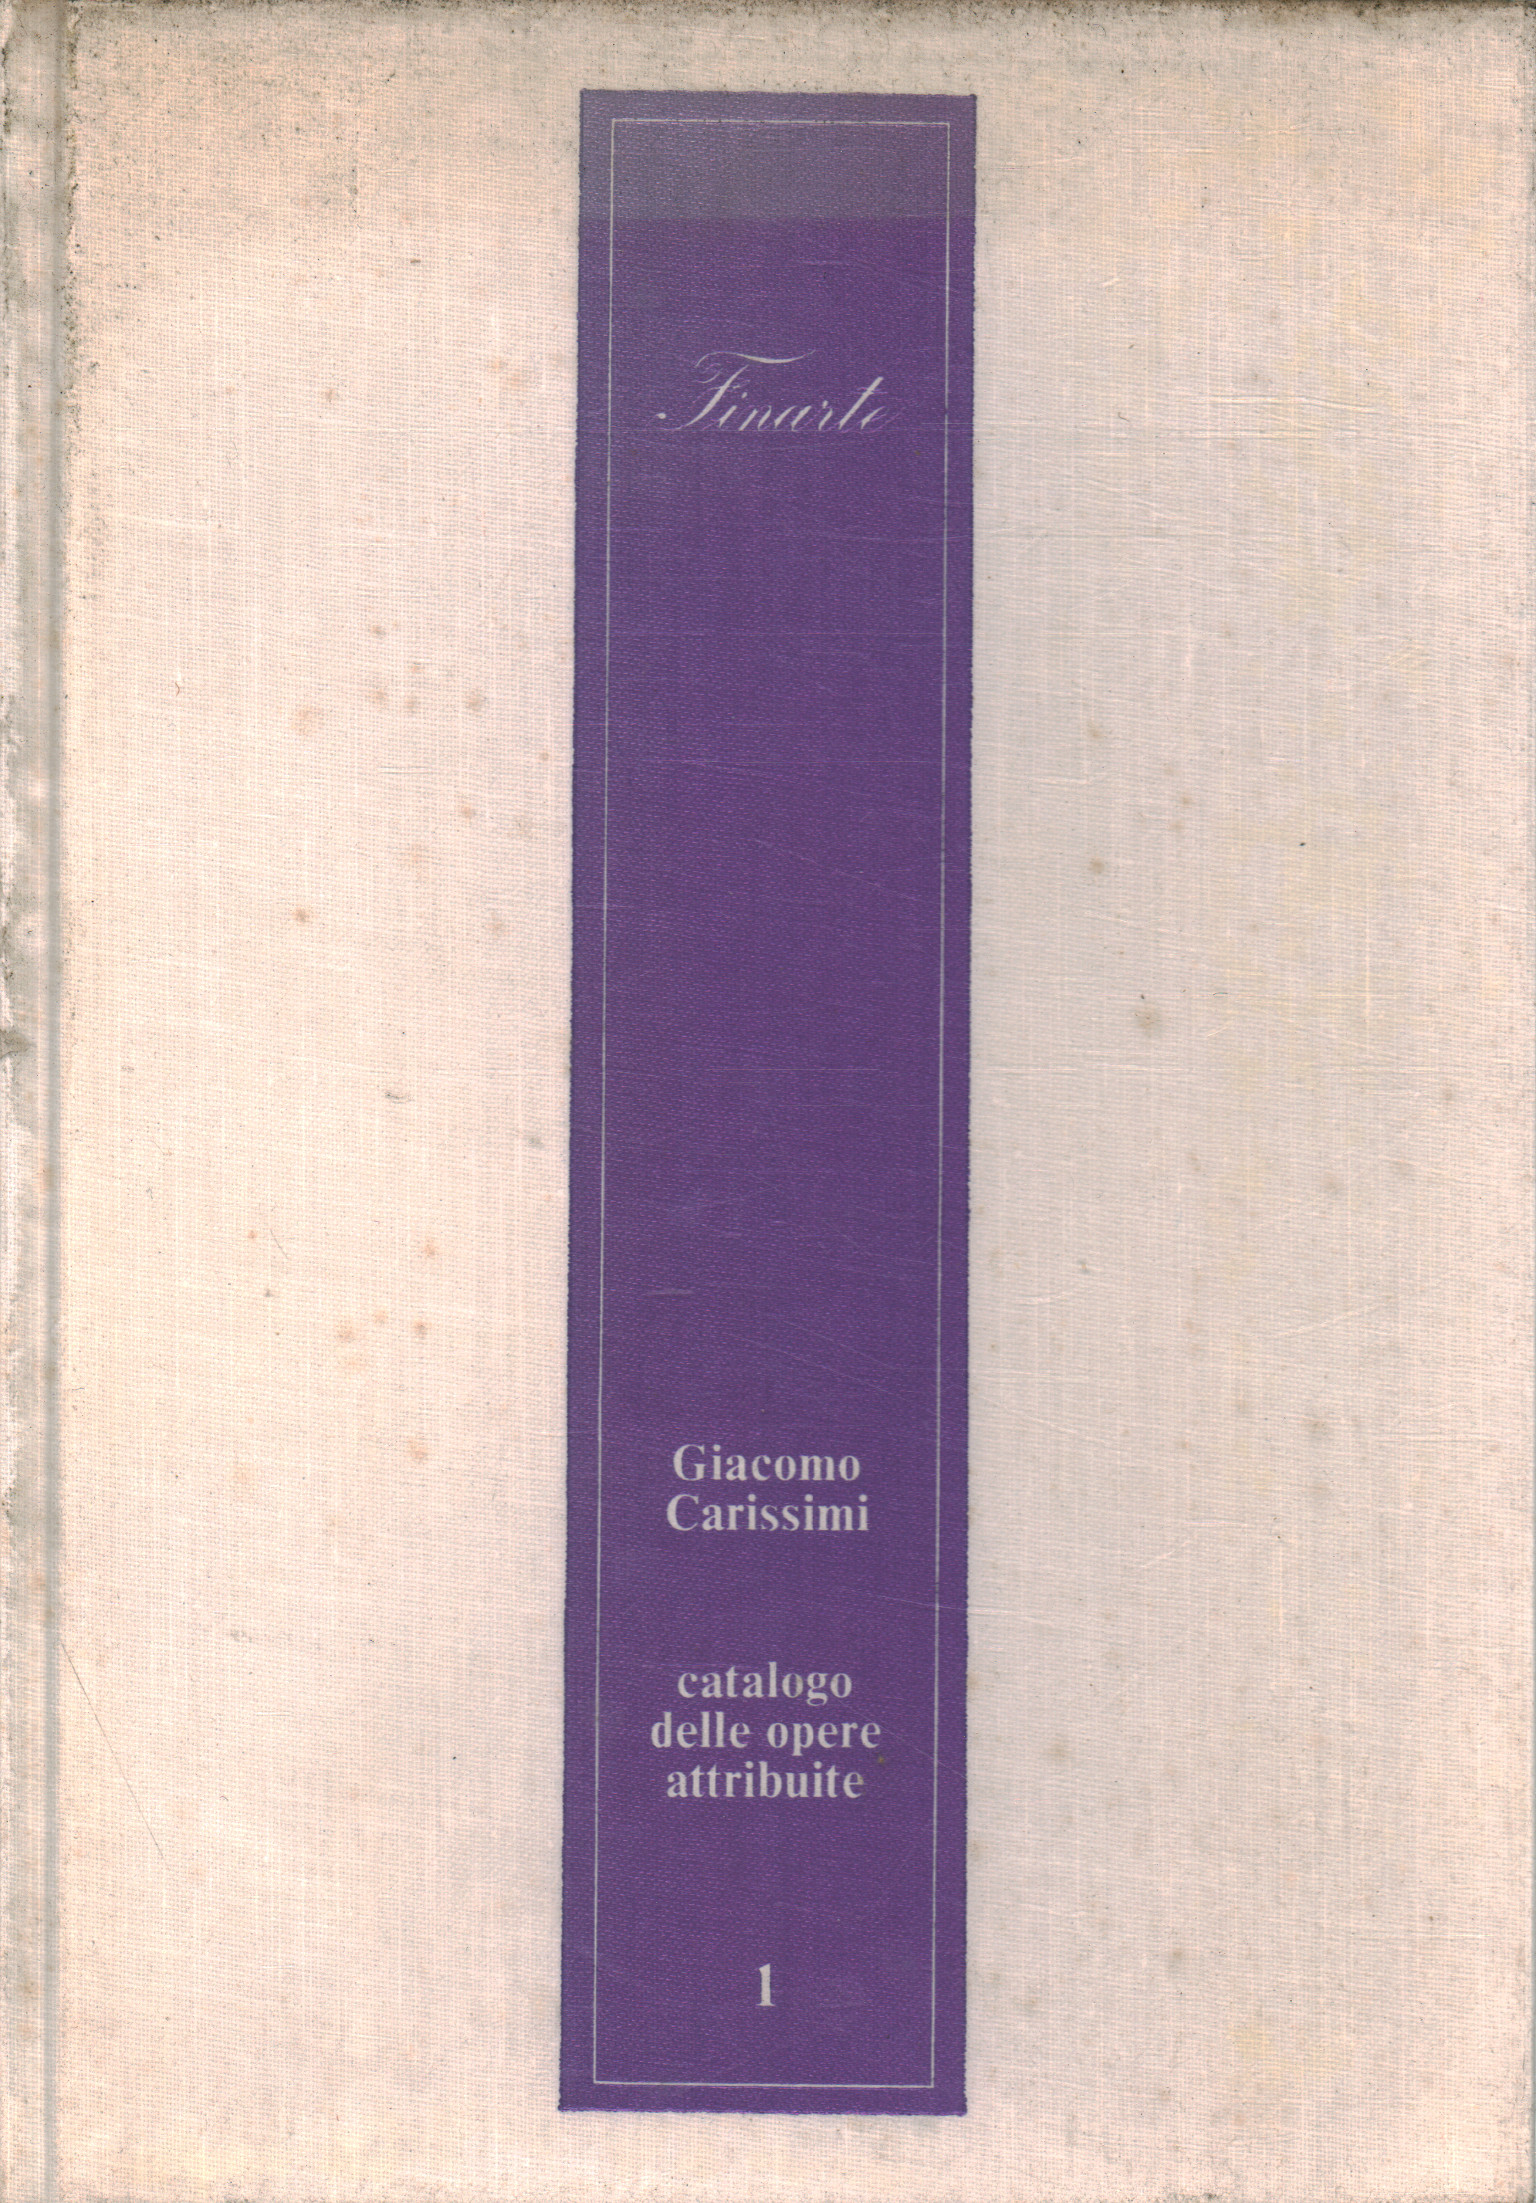 Catalogo delle opere attribuite 1, Giacomo Carissimi